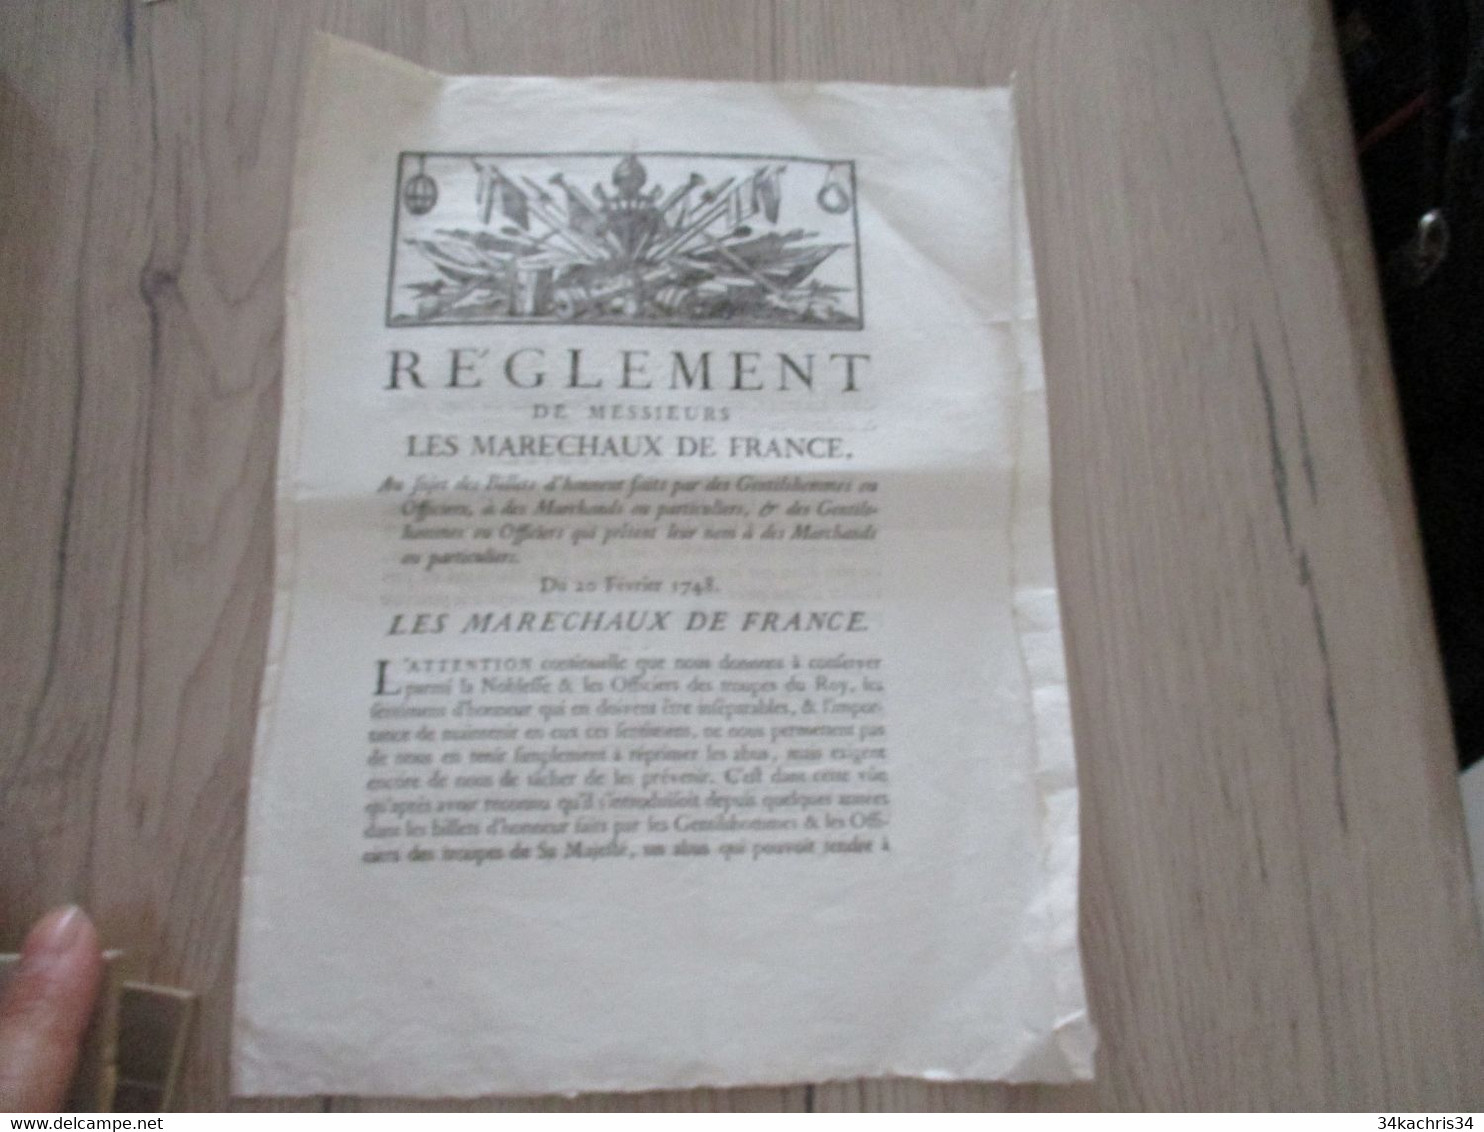 Règlement De Messieurs Les Maréchaux De France  Aux Sujet Des Billets D'Honneur... 20/02/1748 - Decreti & Leggi